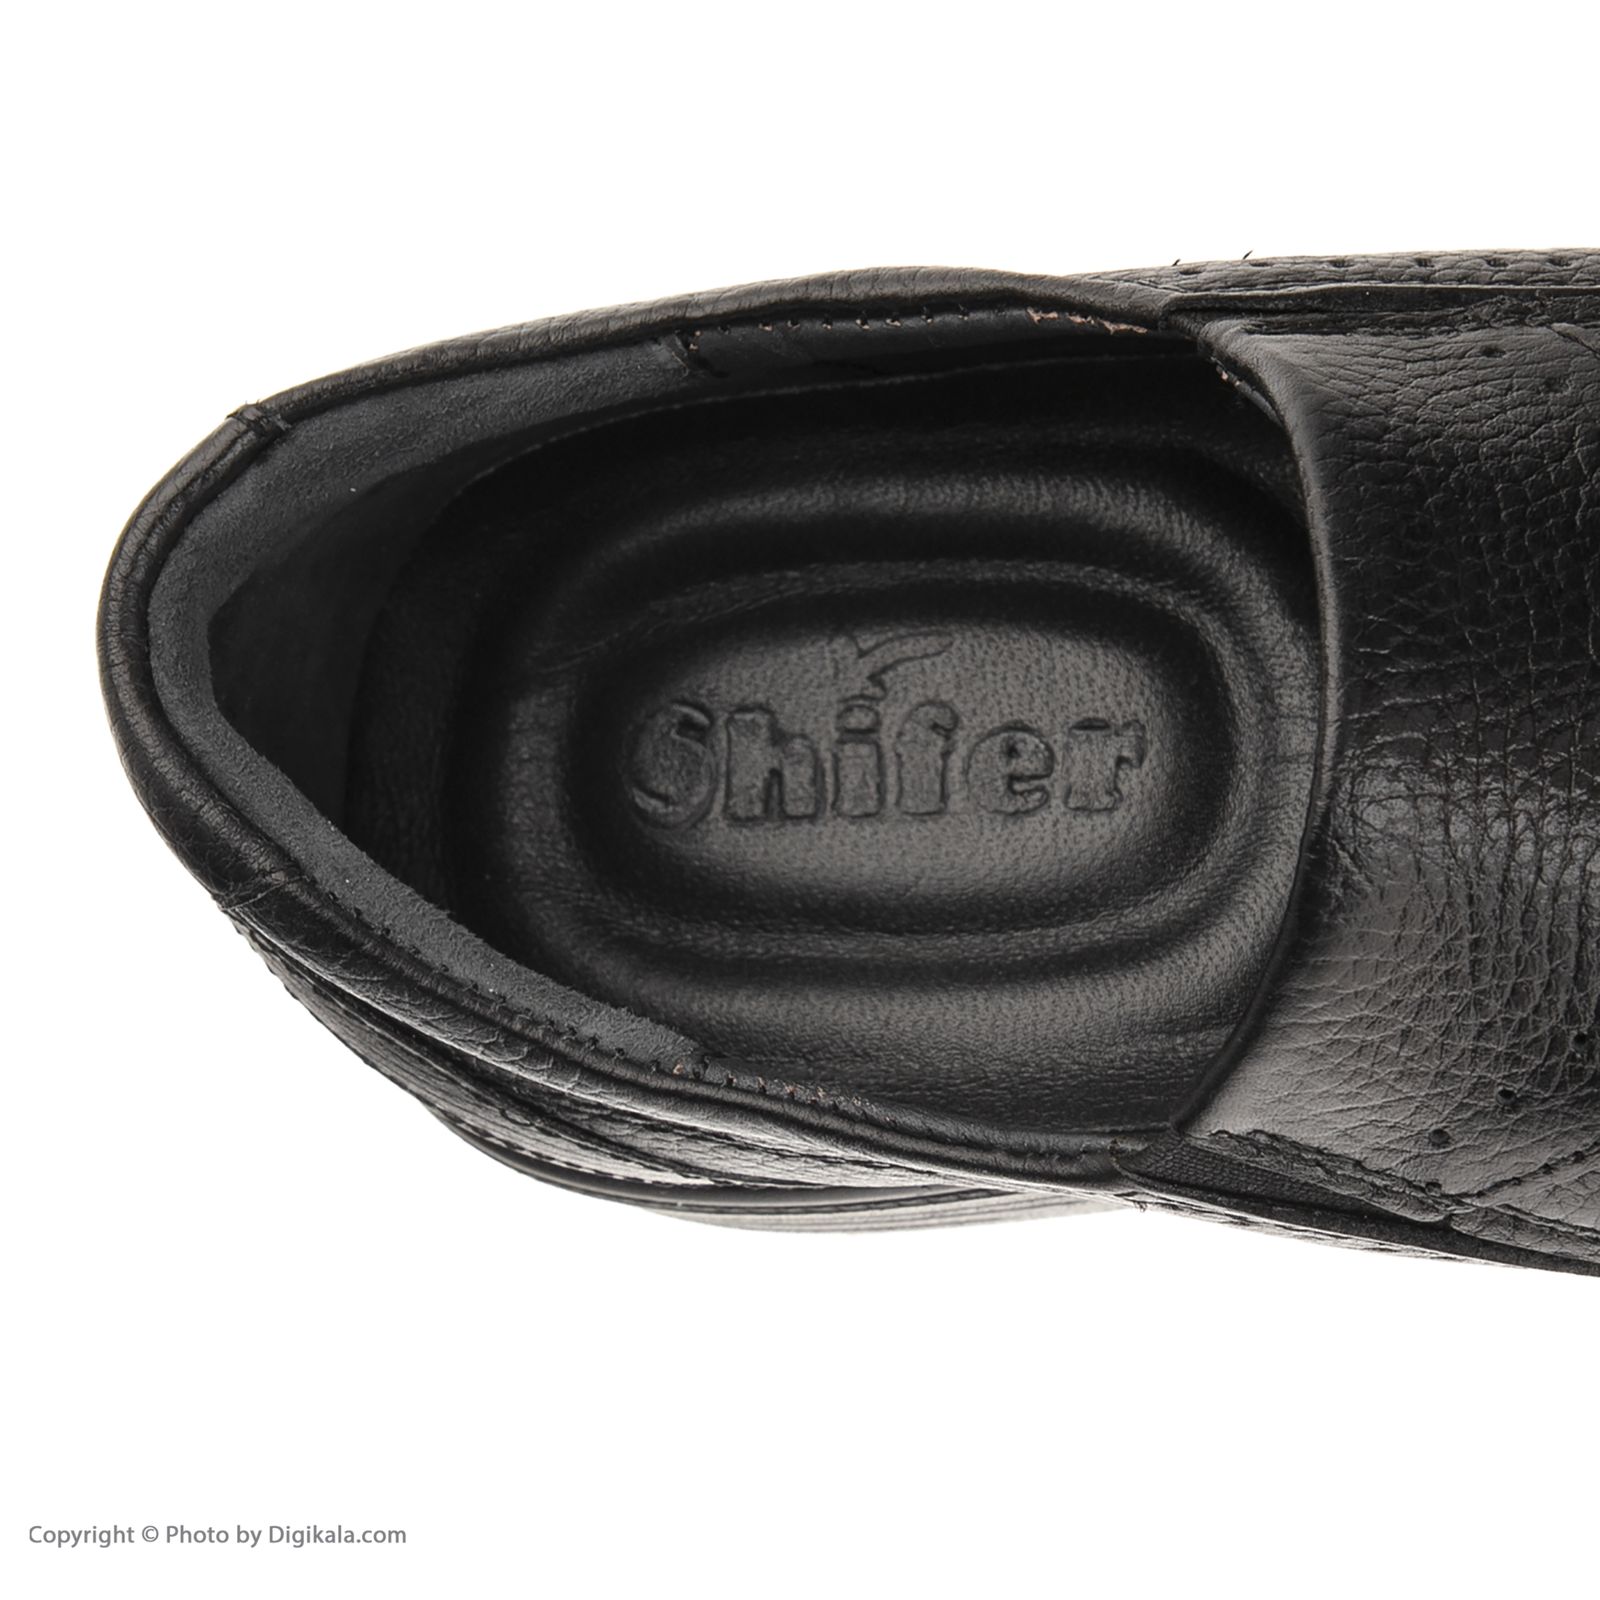 کفش روزمره مردانه شیفر مدل 7310e503101101 -  - 7